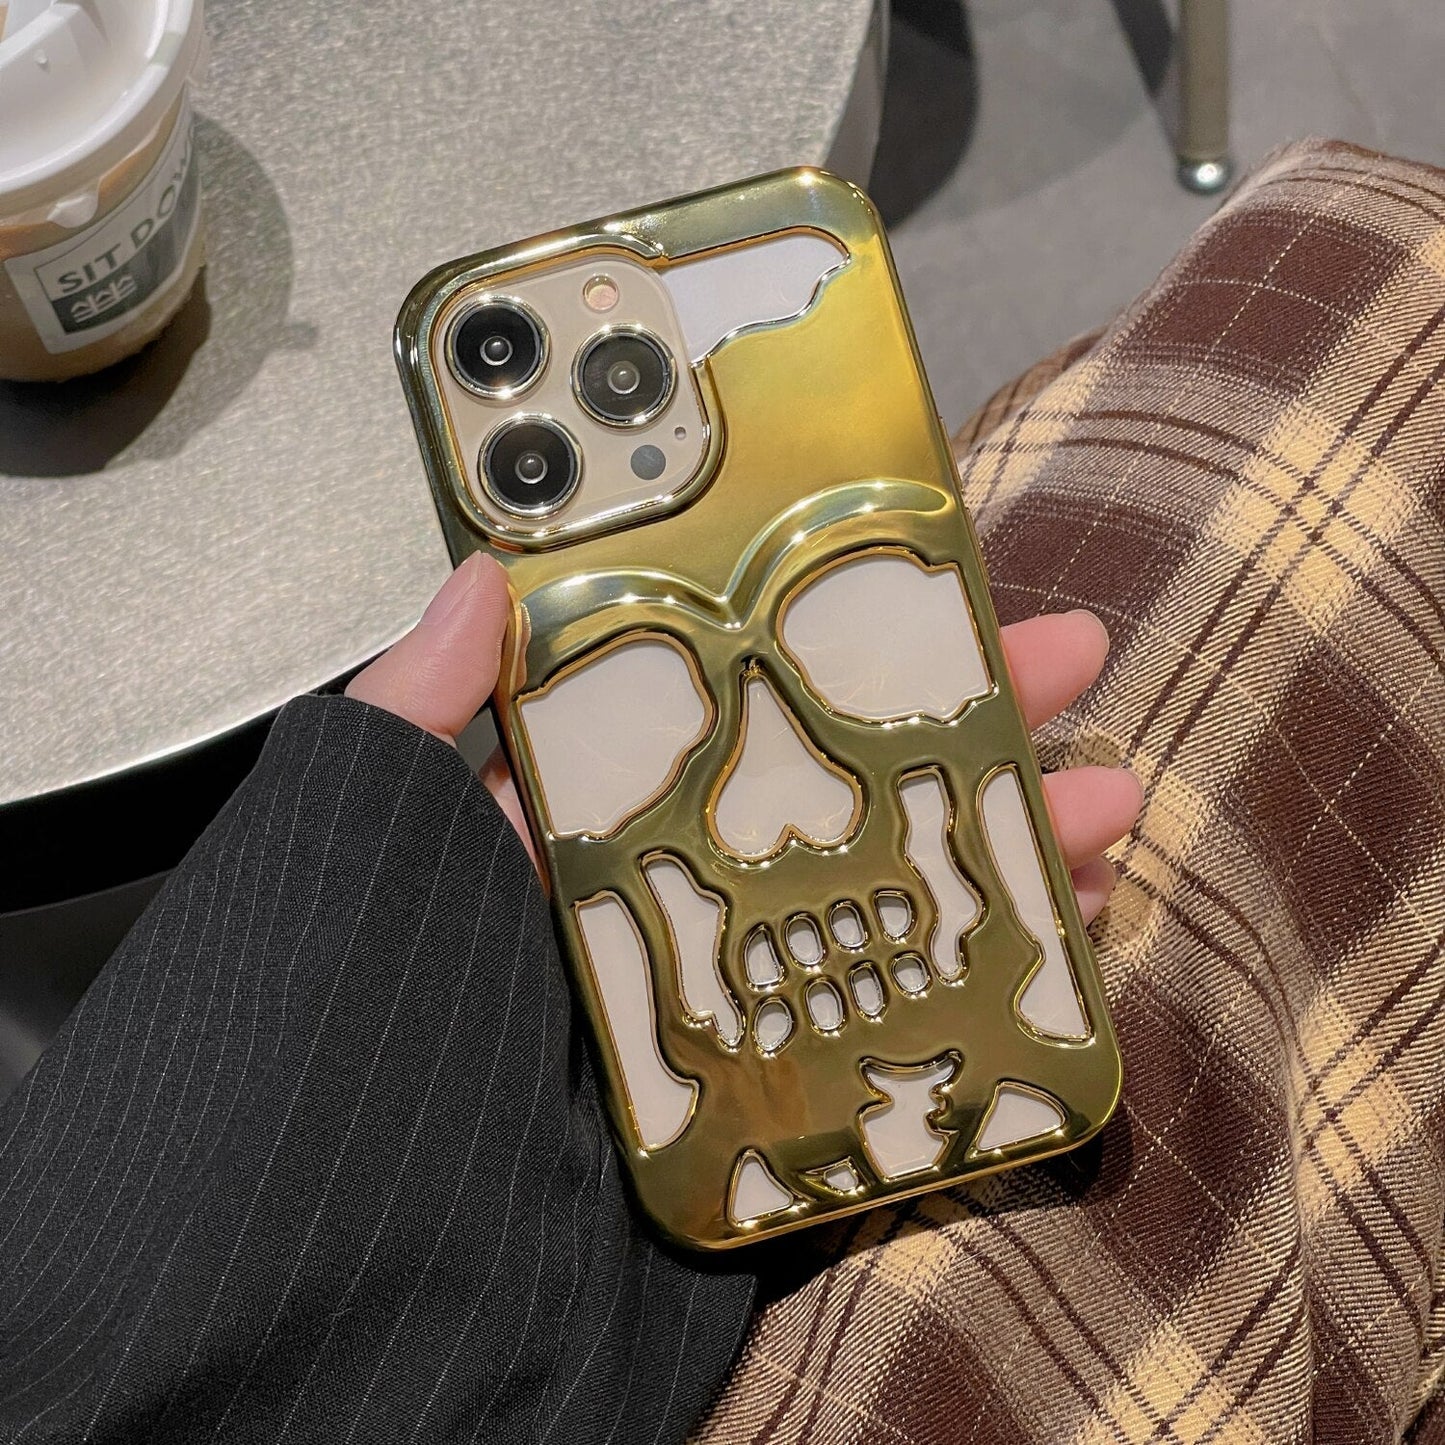 iPhone 13 Hollow Skull Design Case